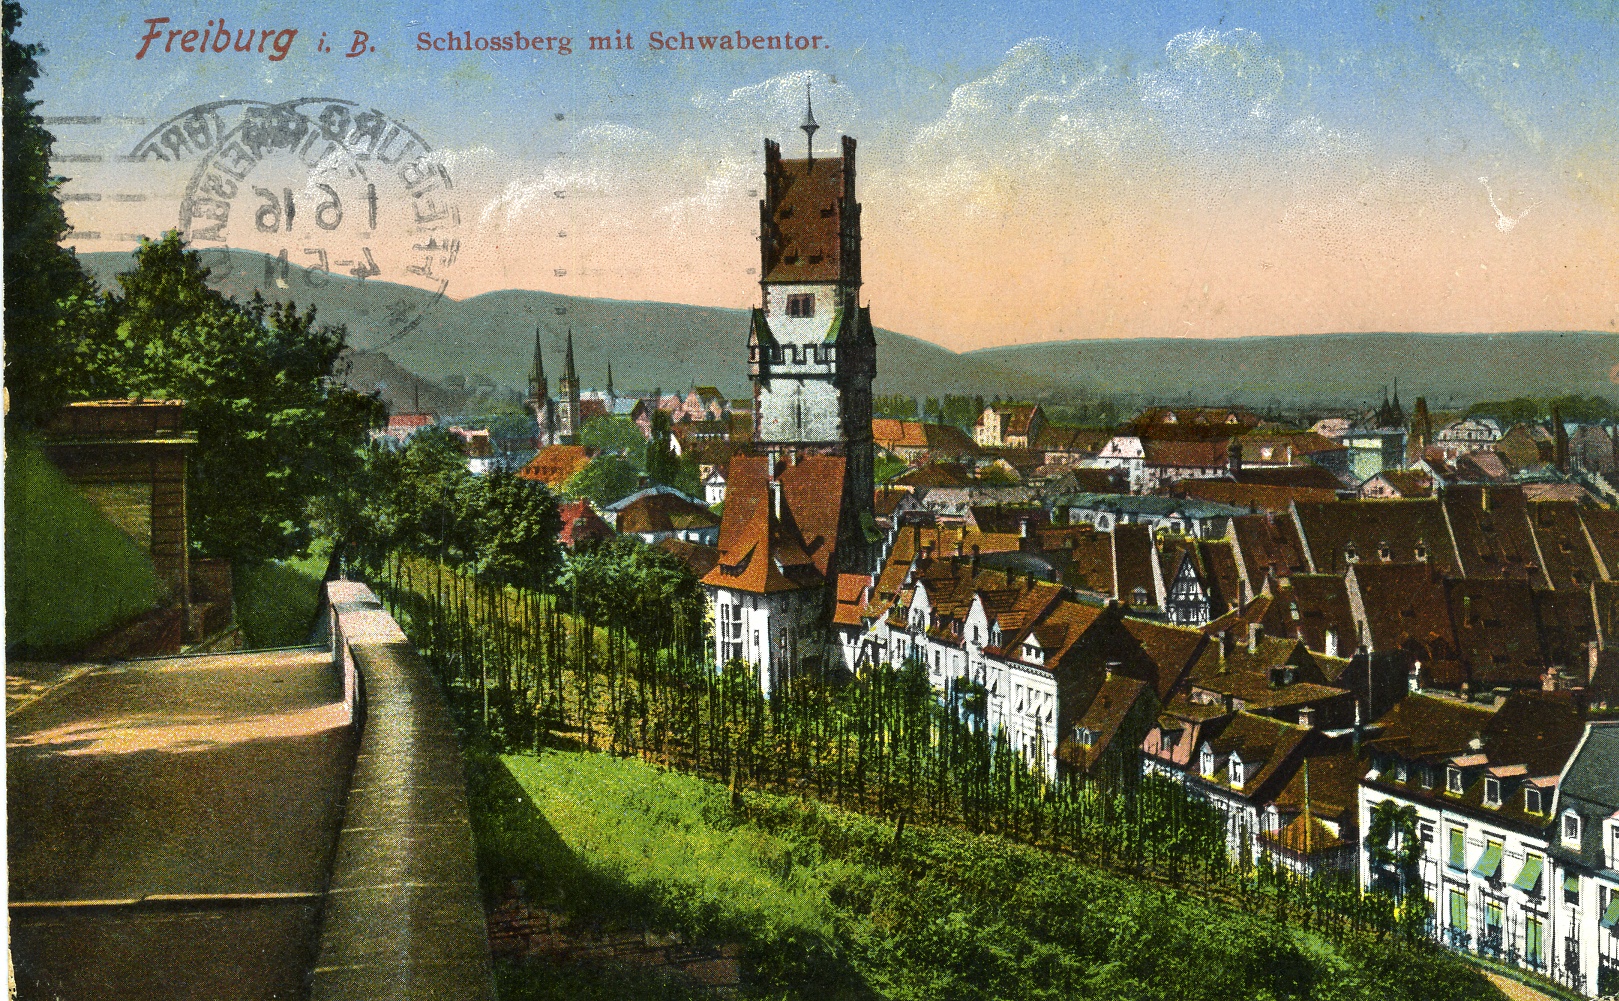 Feldpostkarte aus Freiburg 1916 (Historisches Museum der Pfalz, Speyer CC BY)